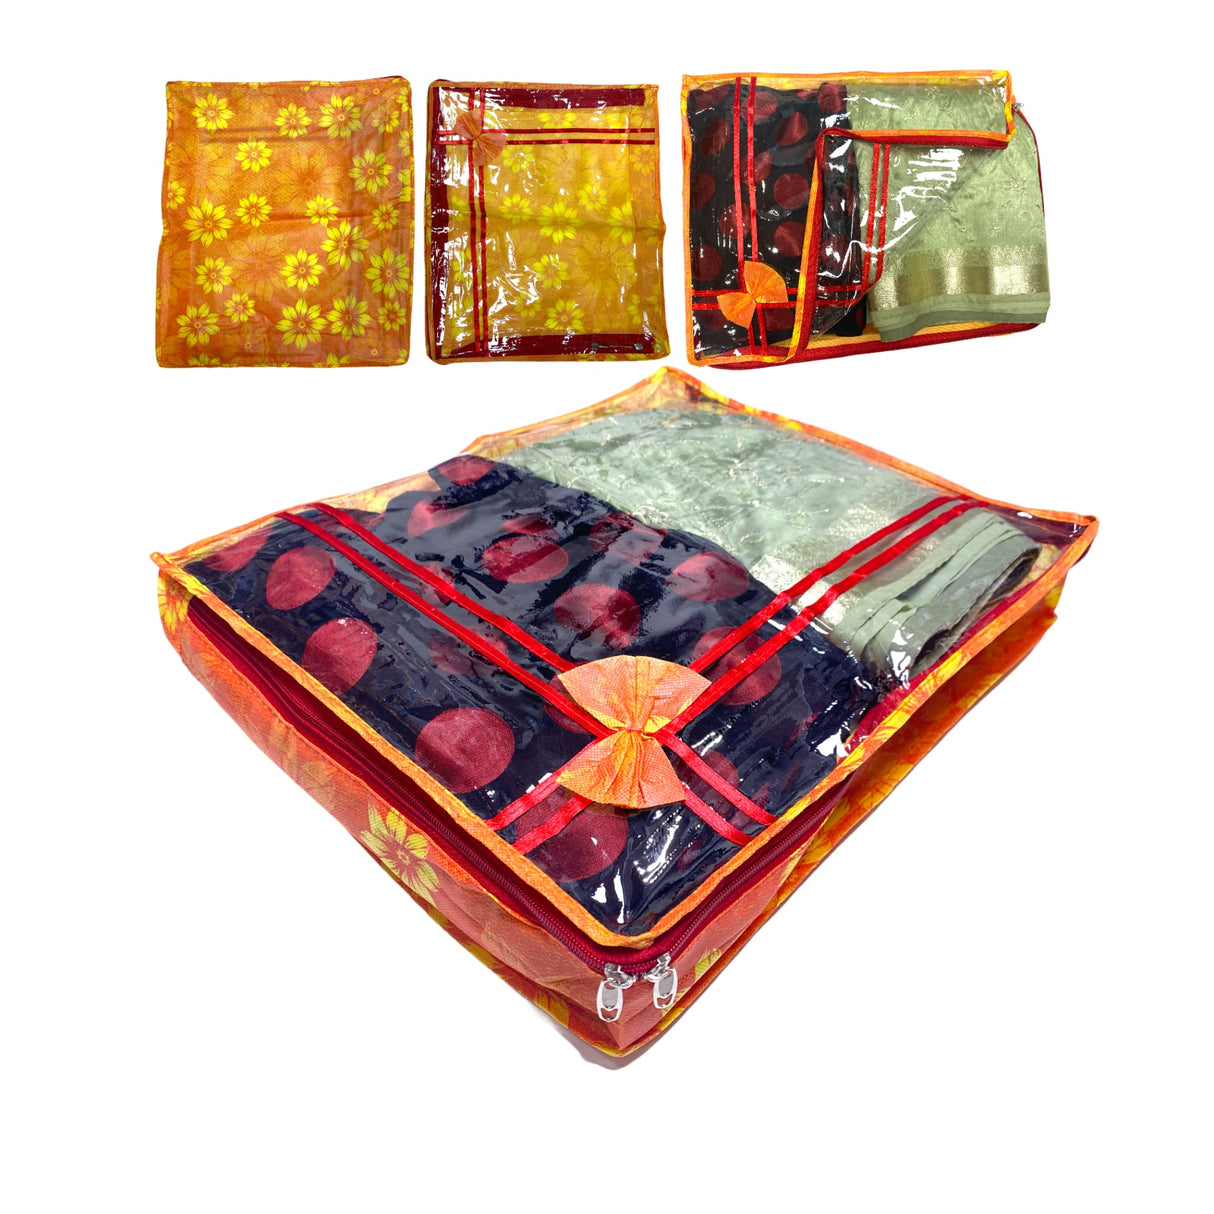 4 piece sari bags cotton saree covers with zipper closure